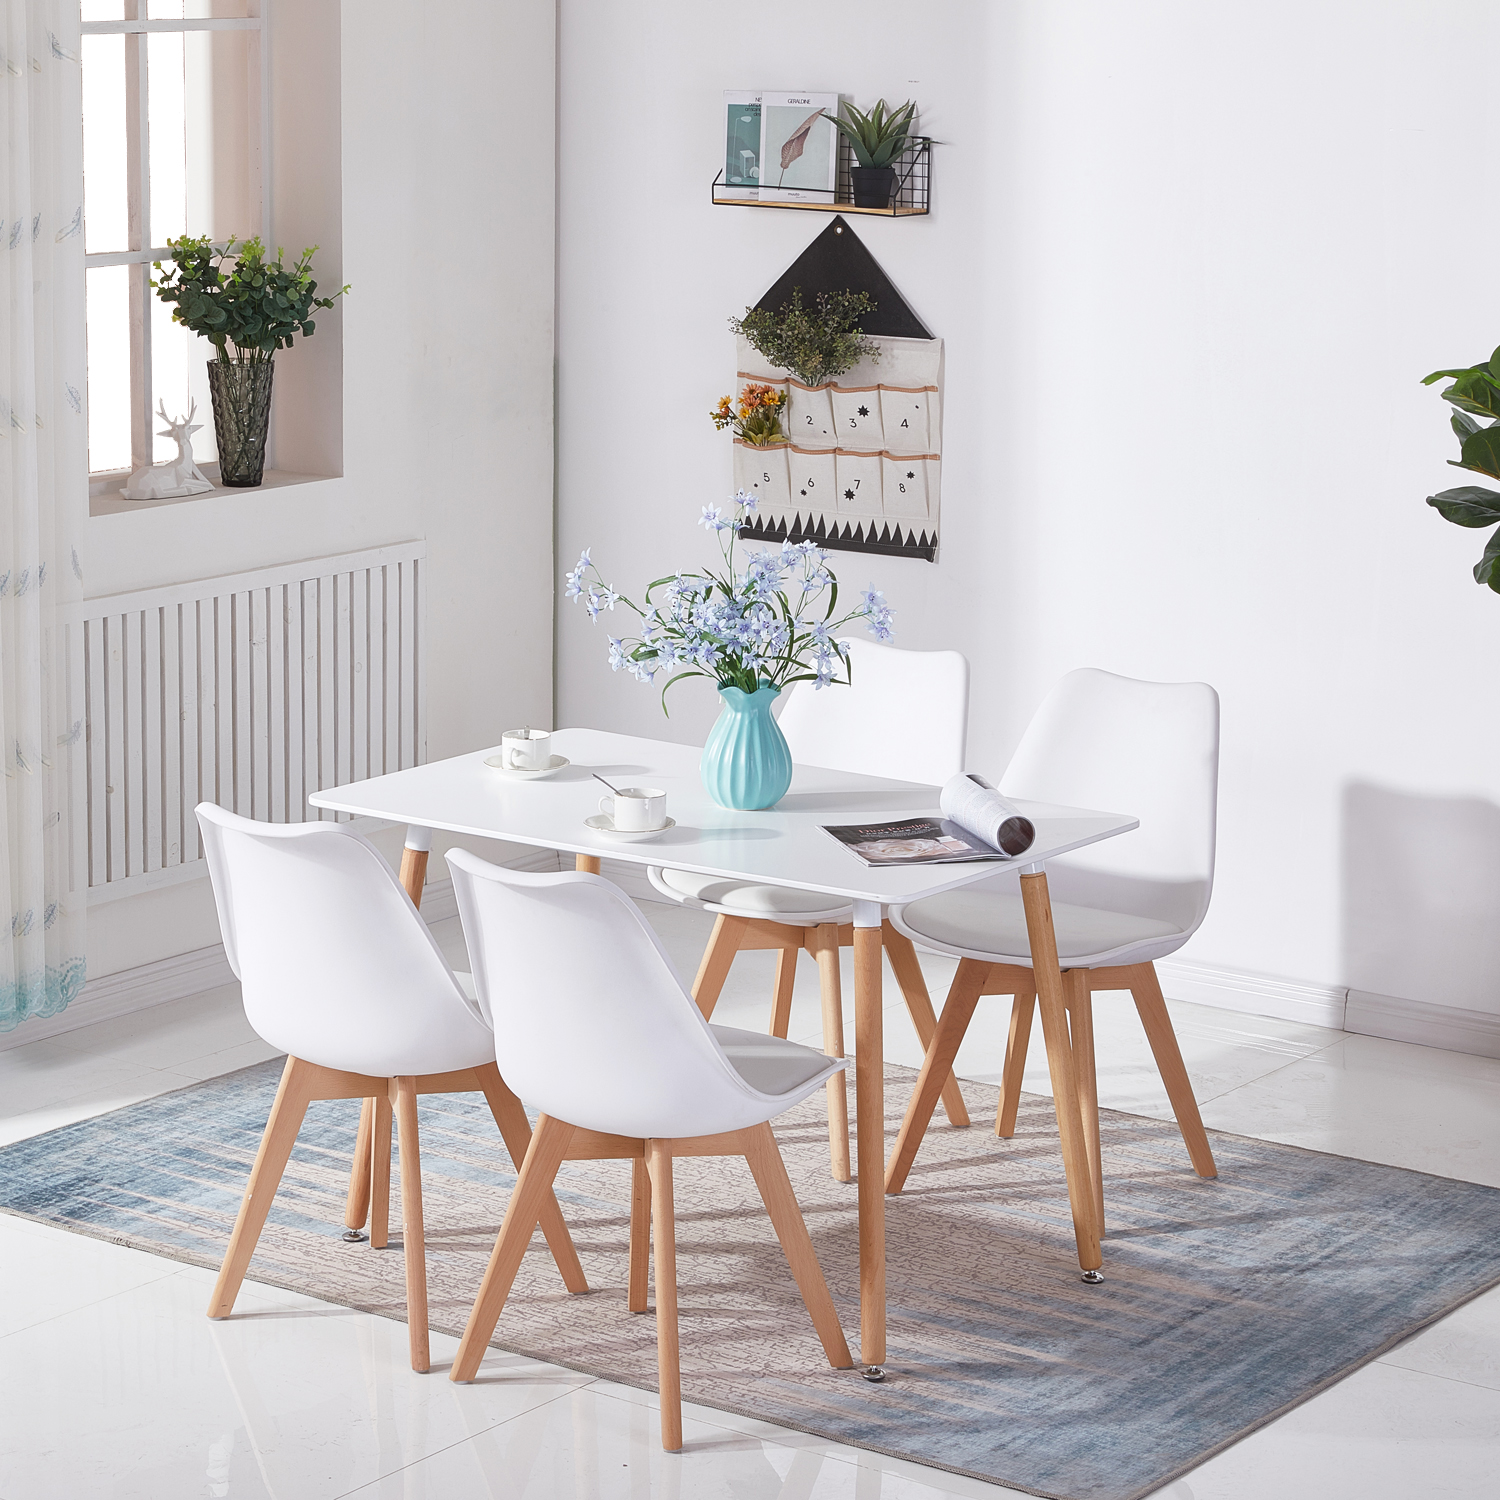 Dora Household Table à Manger Rectangulaire en Bois Salle à Manger Scandinave Simple Table en bois à quatre pieds 110*70*73cm -Blanc